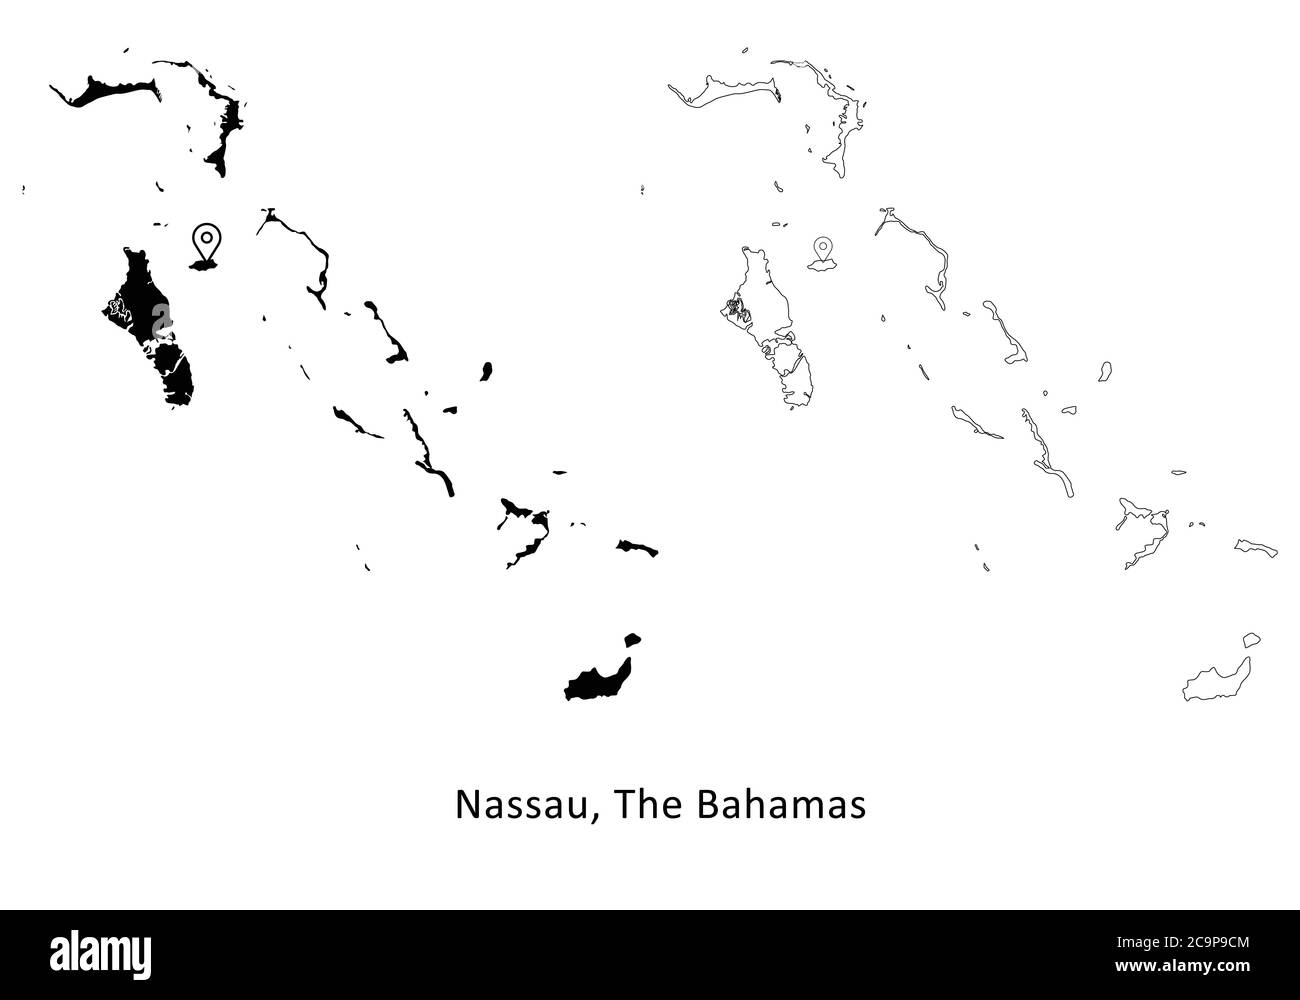 Nassau aux Bahamas. Carte détaillée du pays avec code PIN Capital City Location. Cartes silhouettes et vectorielles noires isolées sur fond blanc. Vecteur EPS Illustration de Vecteur